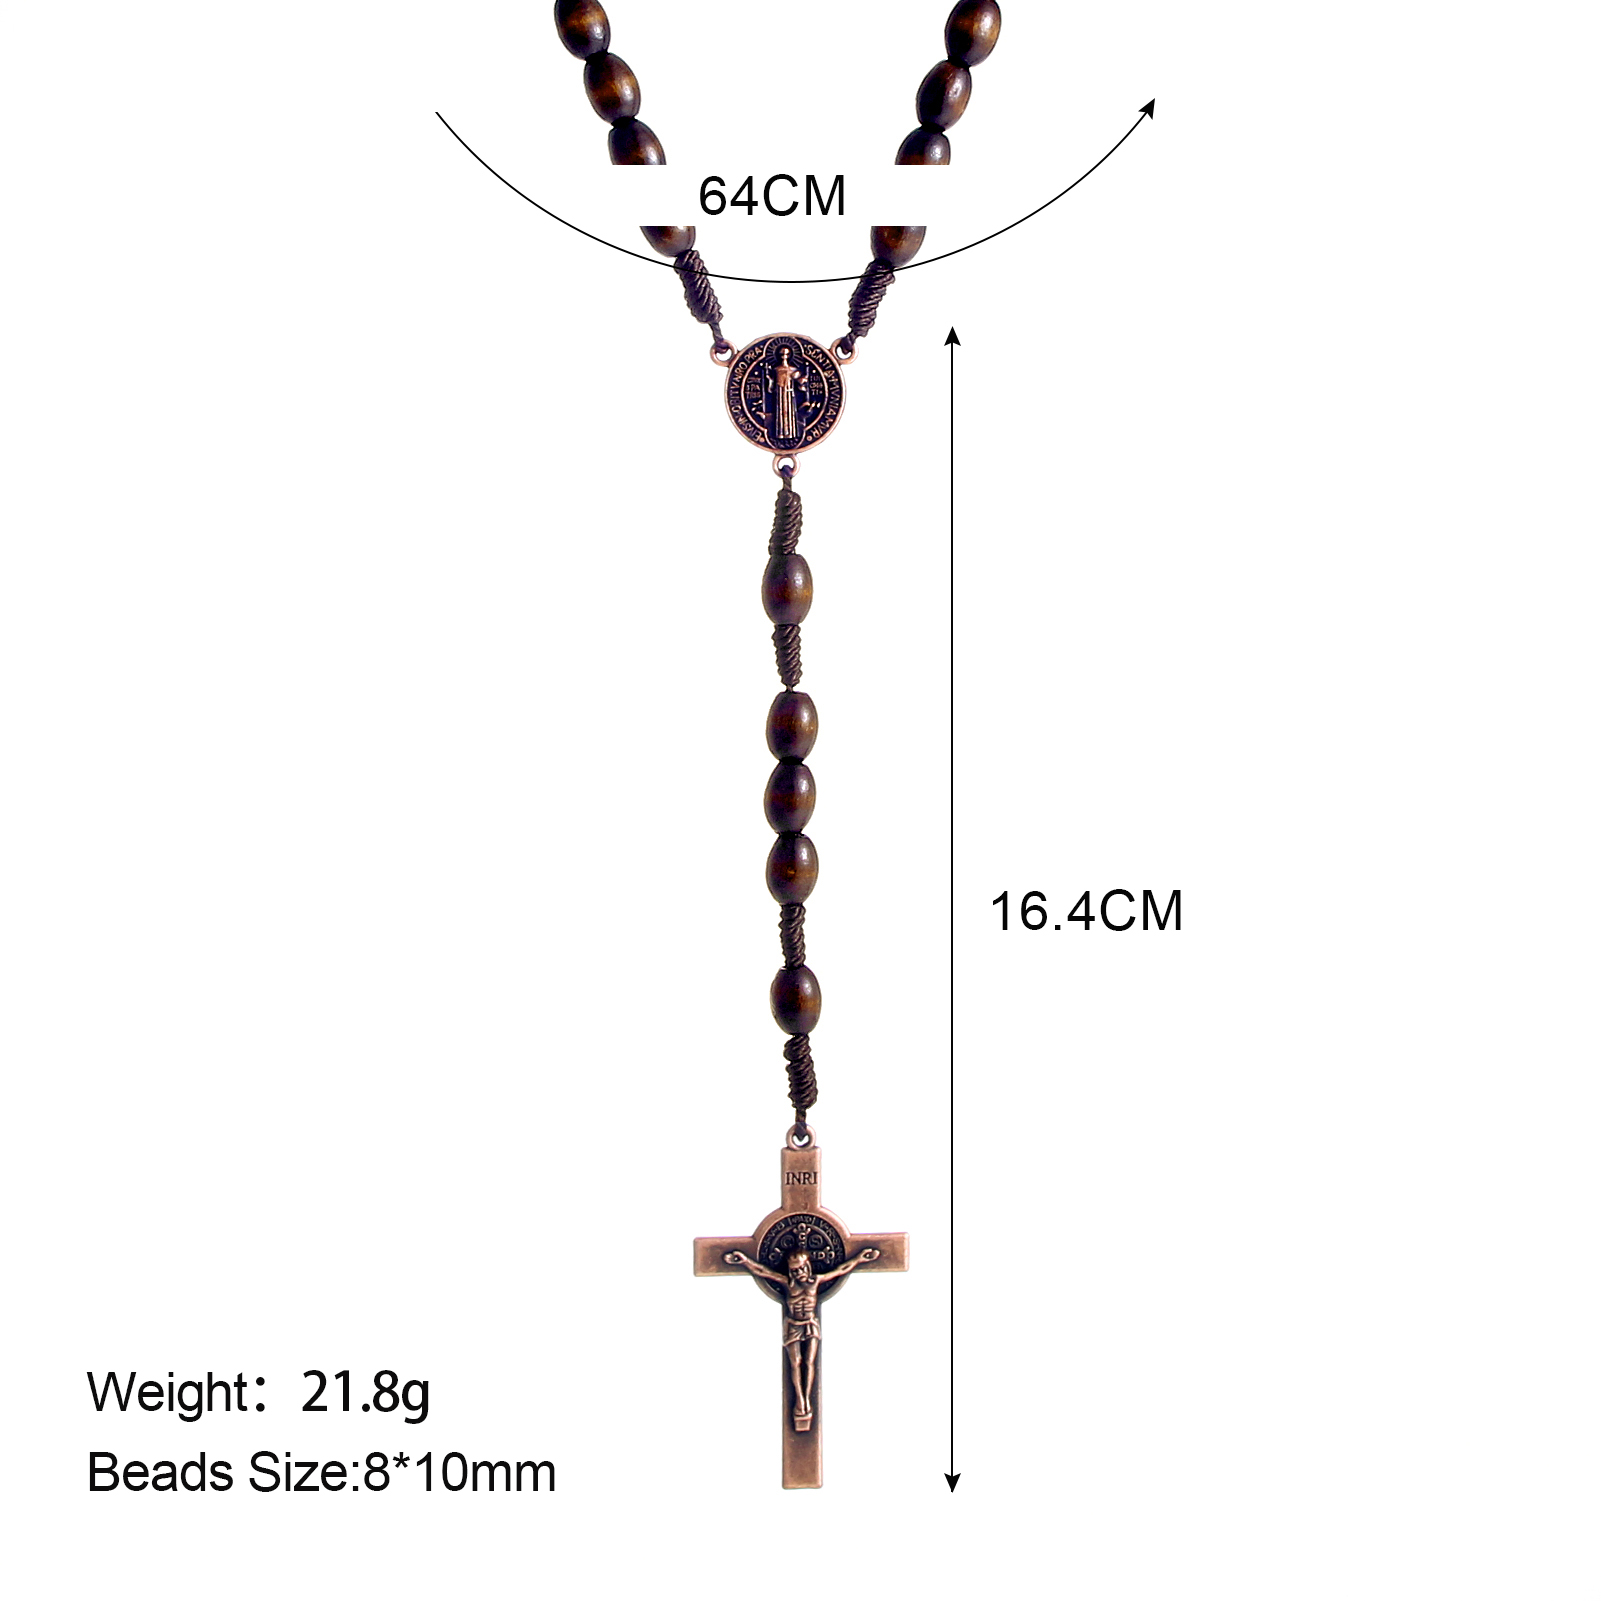 念珠项链/十字架项链/宗教木珠首饰产品图